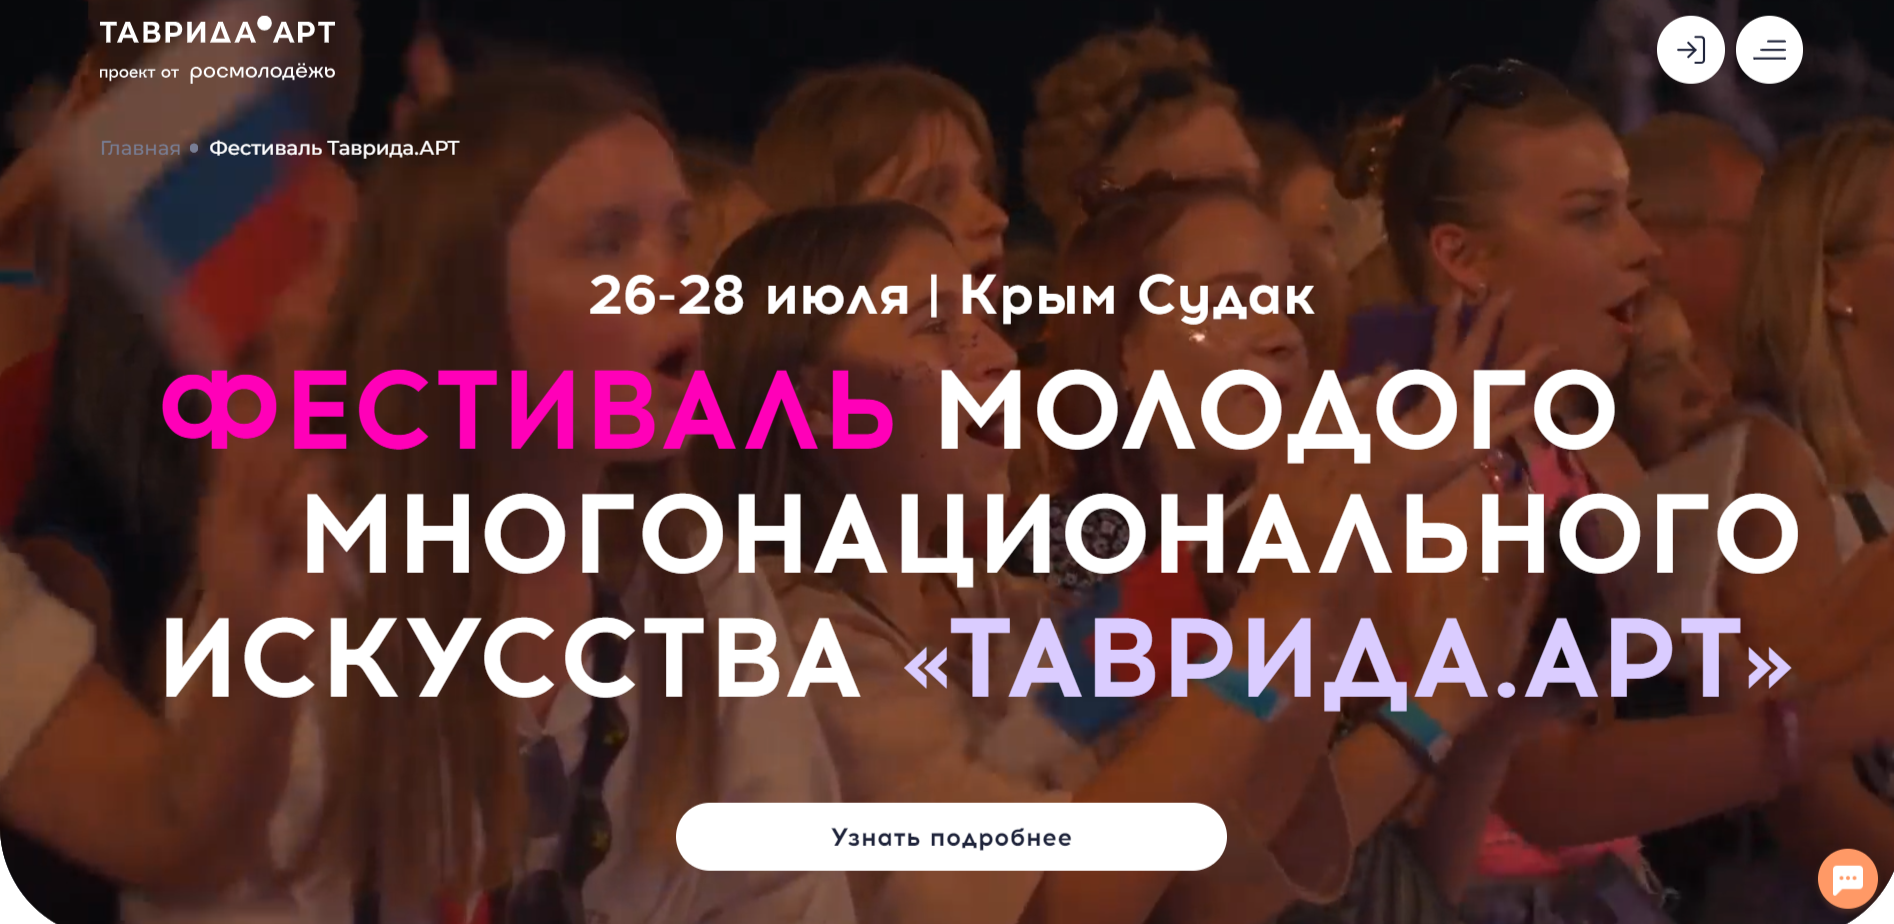 Орловчан приглашают в Крым на творческий фестиваль «Таврида.Арт»